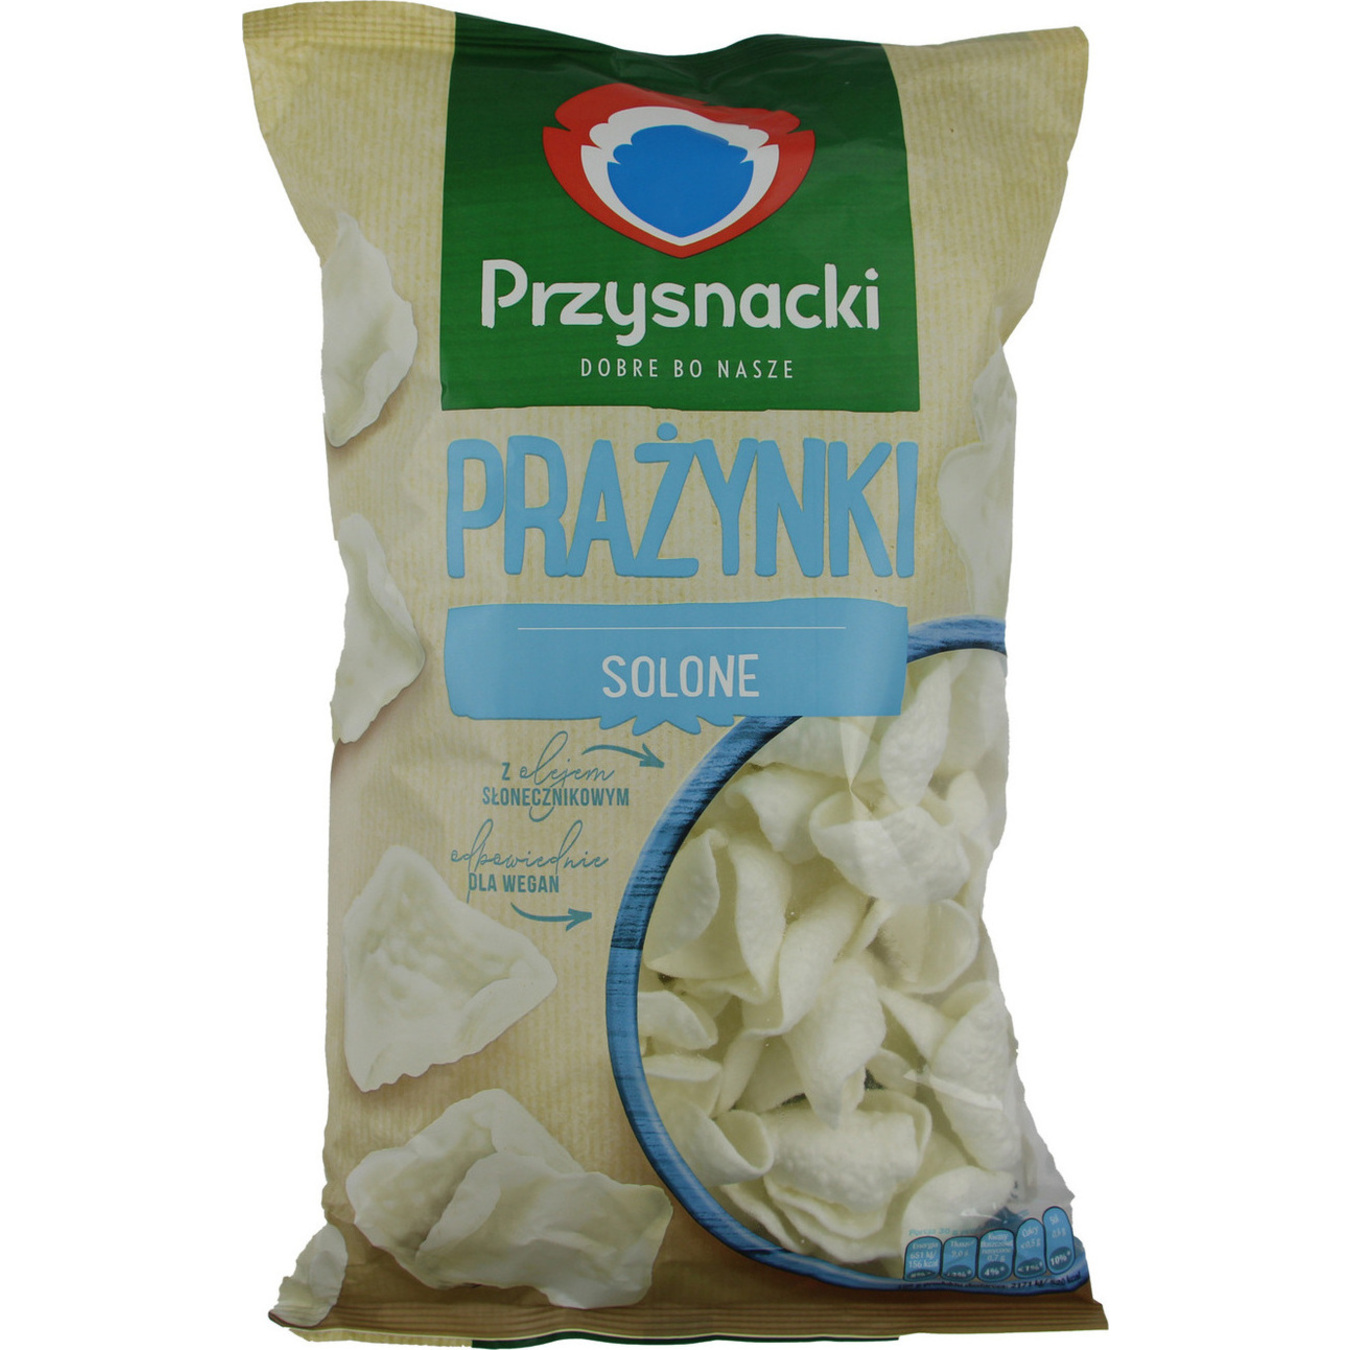 Снеки Przysnacki картофельные соленые 120г